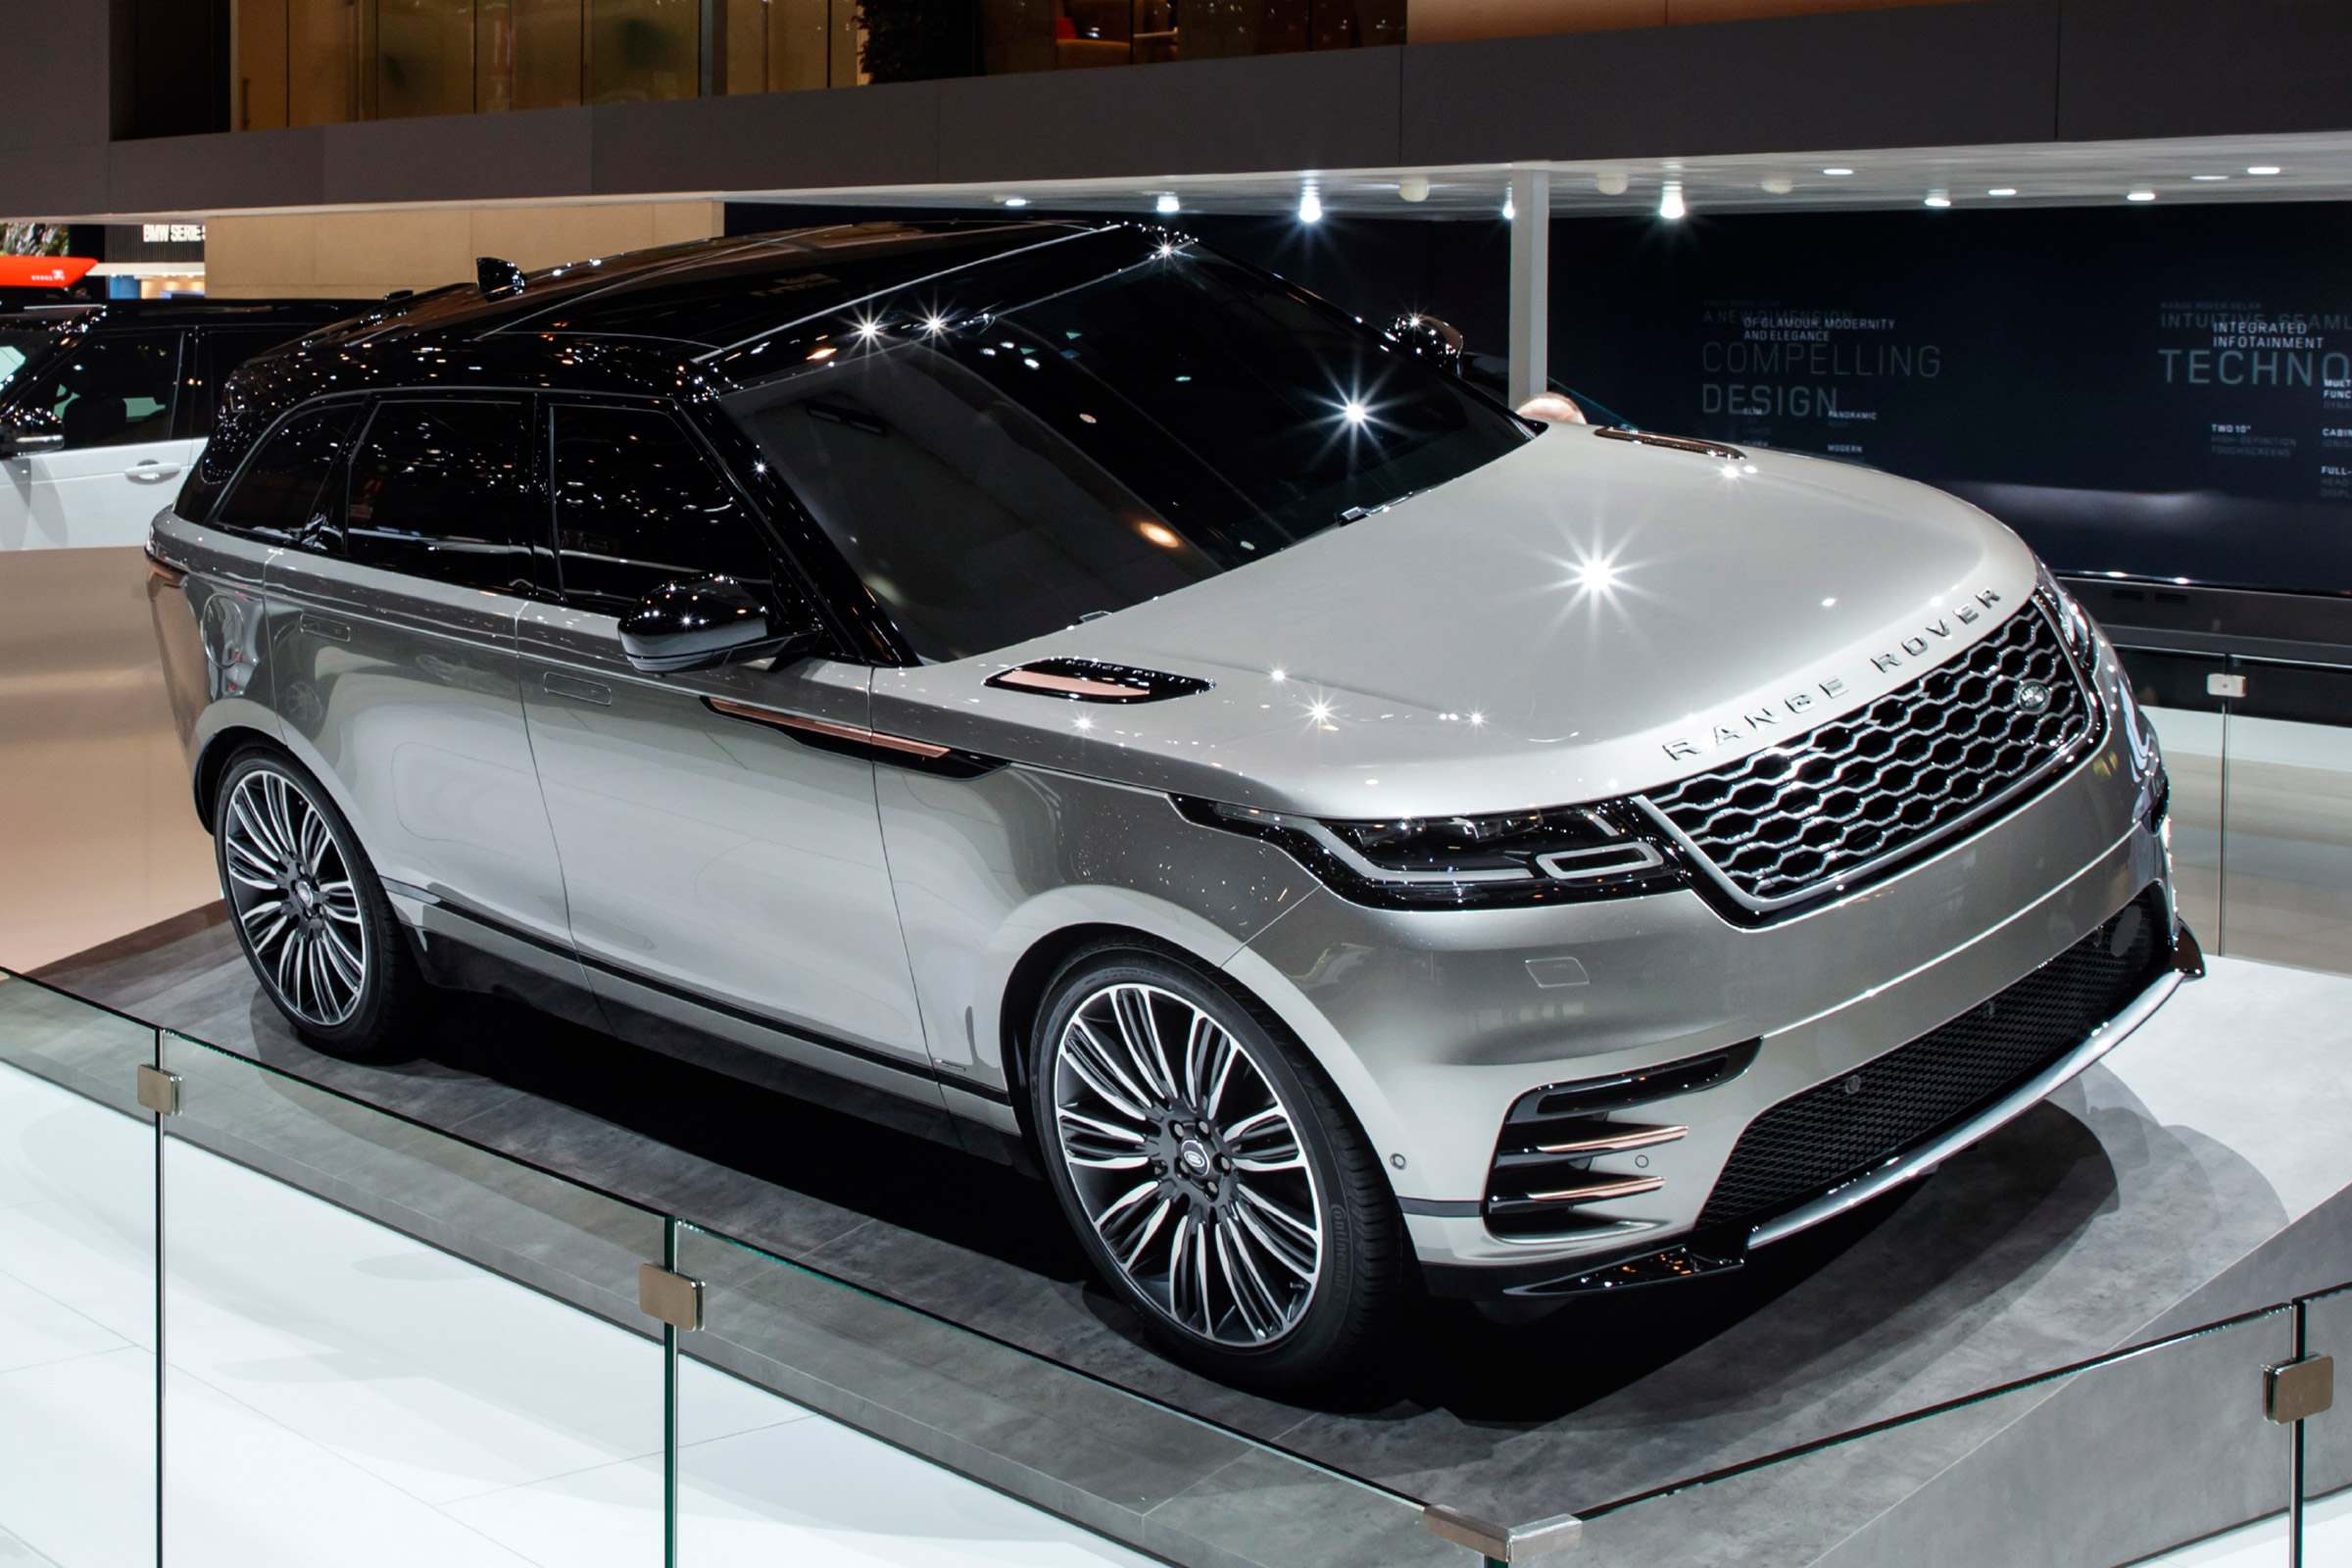 New Range Rover Velar SUV revealed Geneva debut, specs